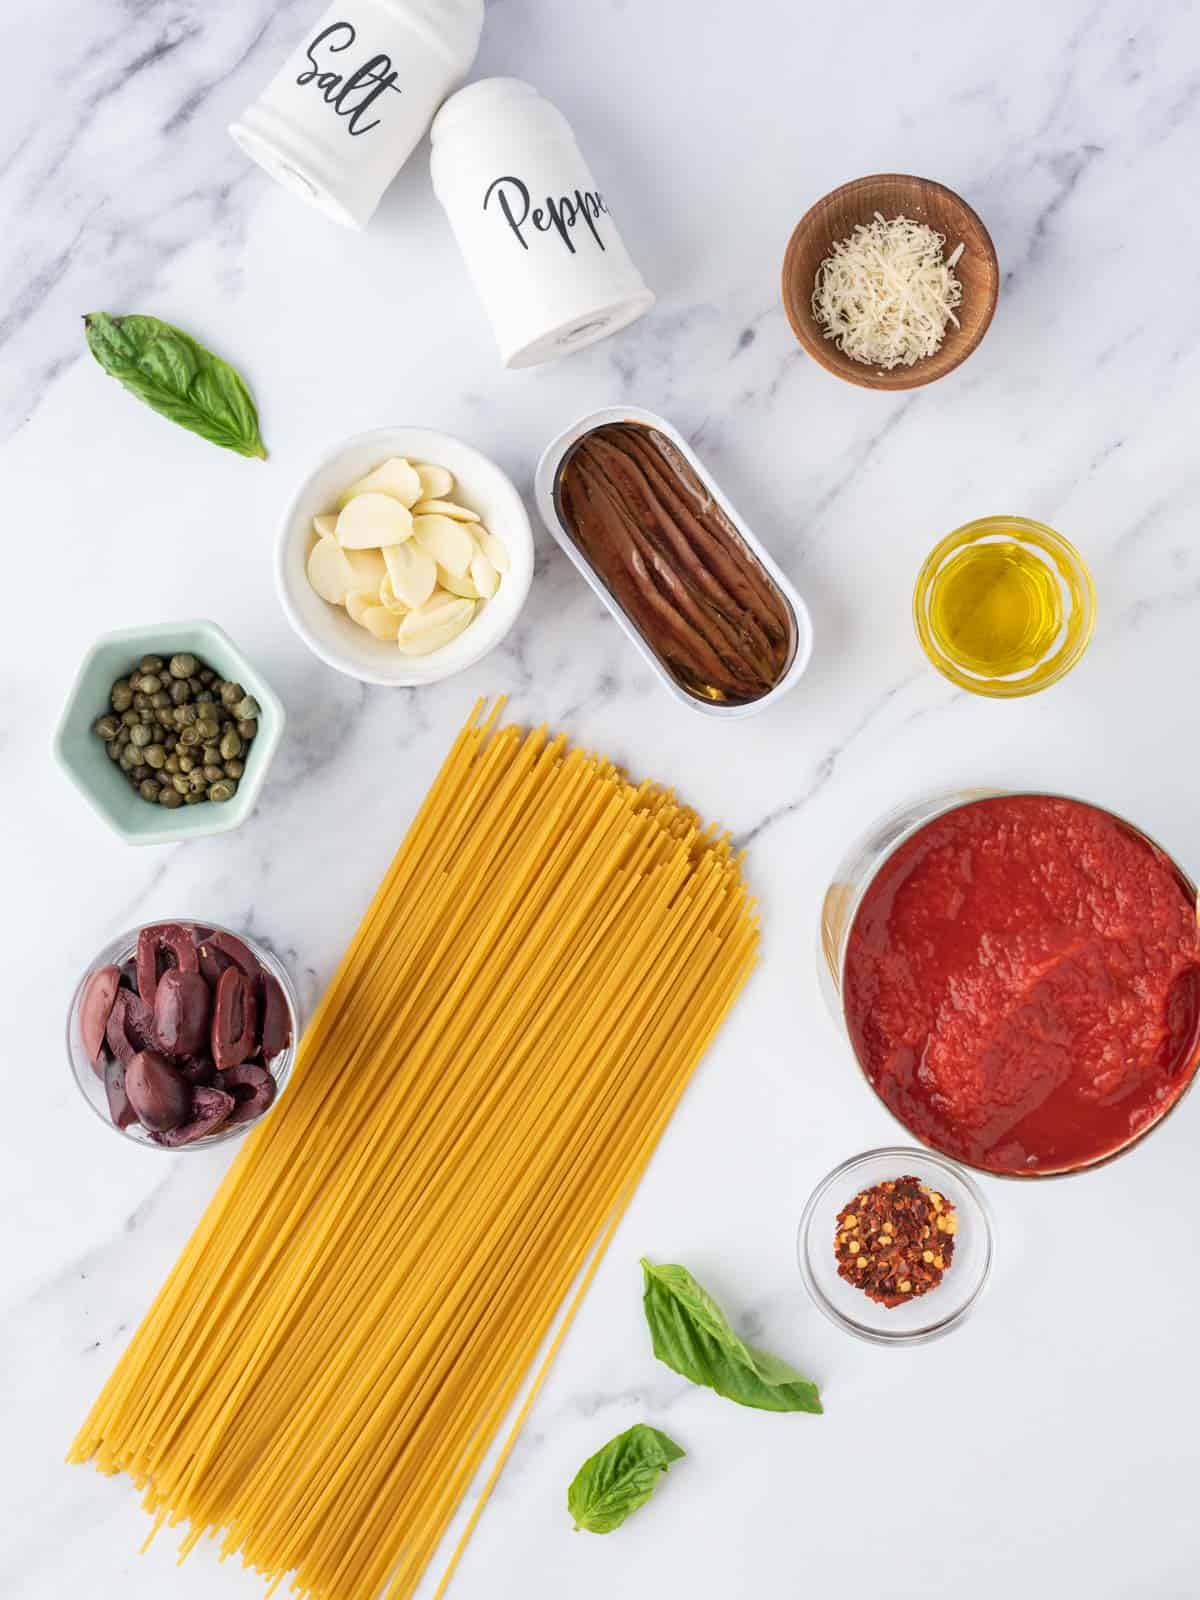 Ingredients for pasta puttanesca.